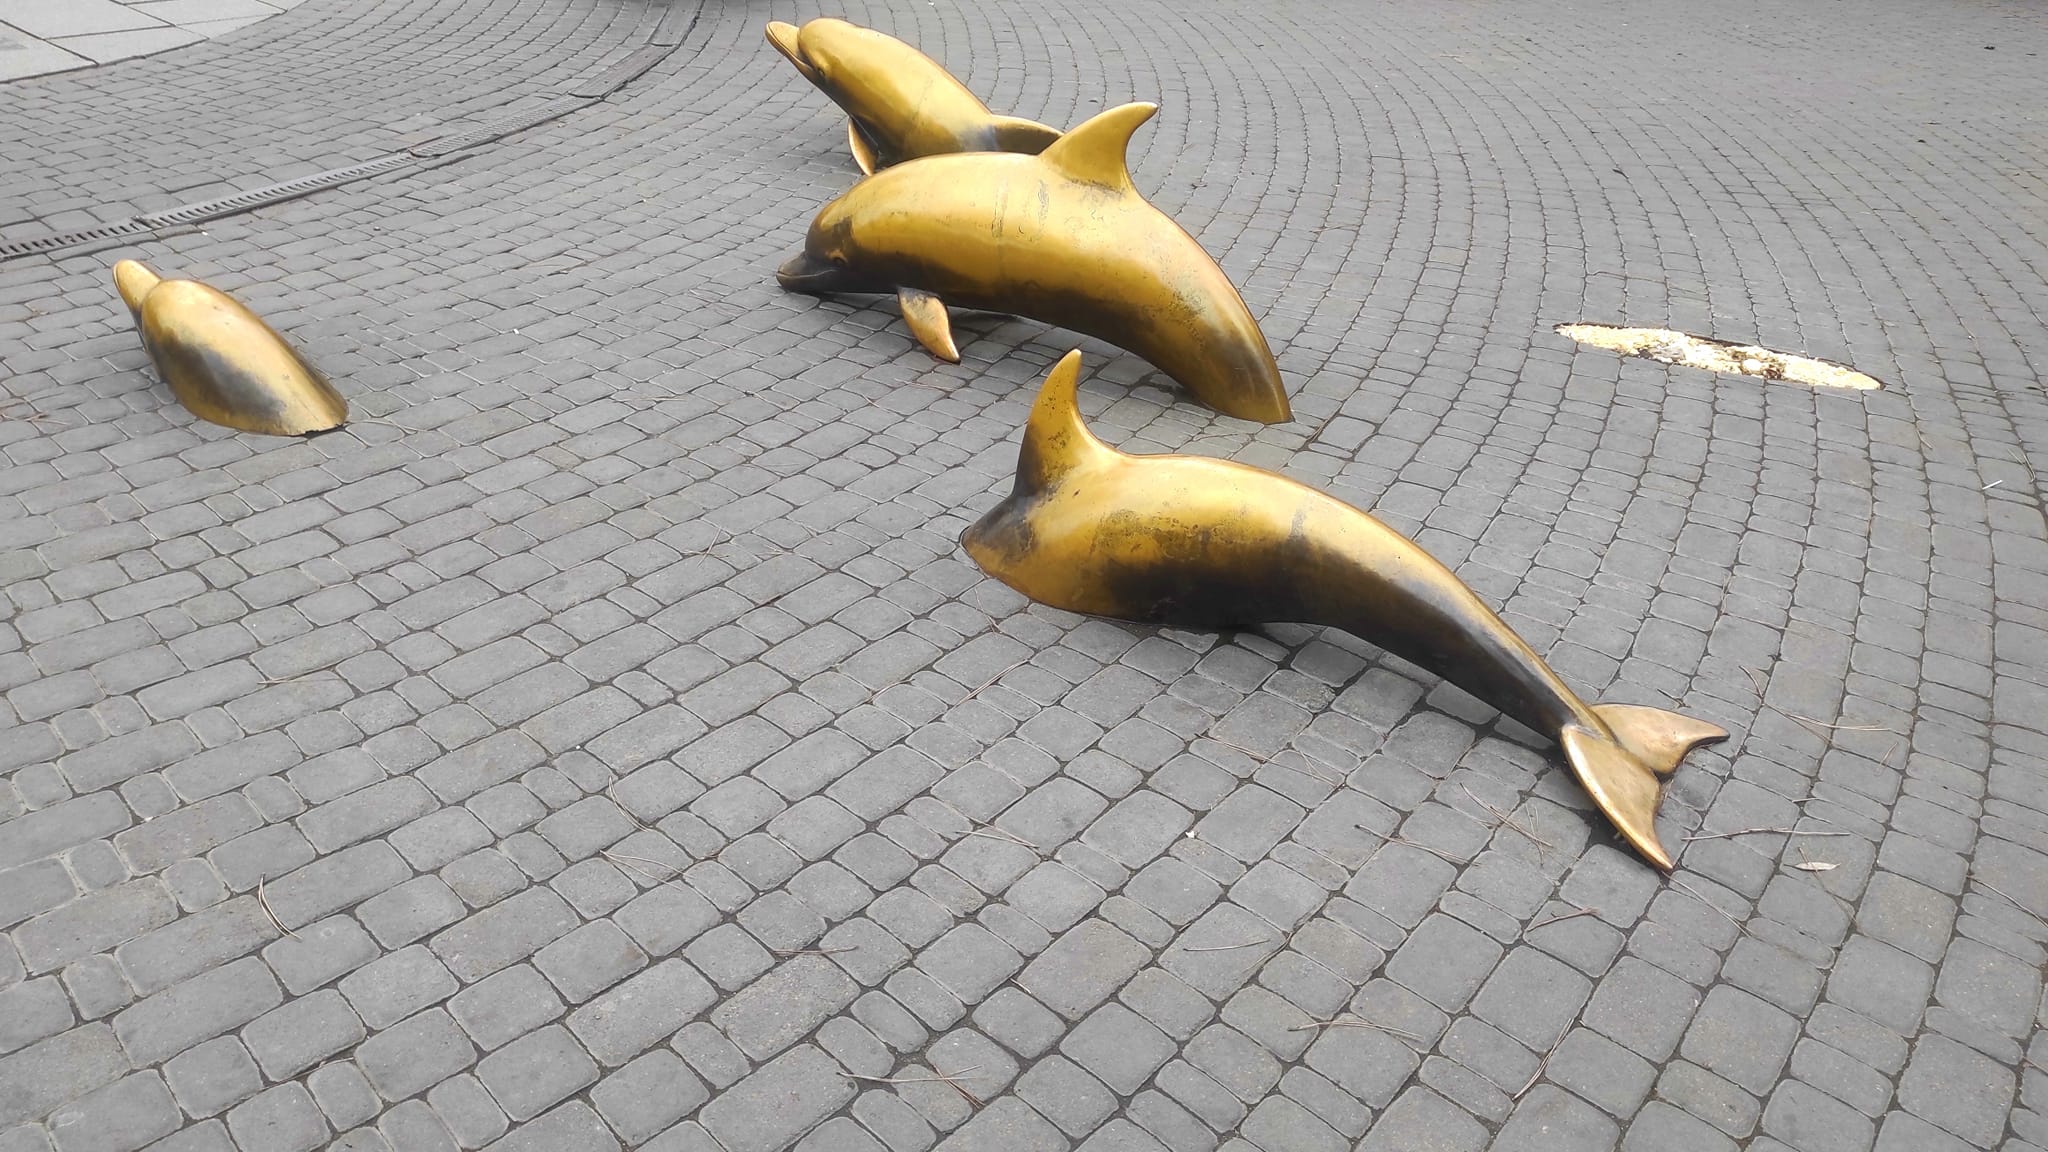 Зі Старосінної площі в Одесі зникла скульптура дельфіна: що відомо — УСІ  Online